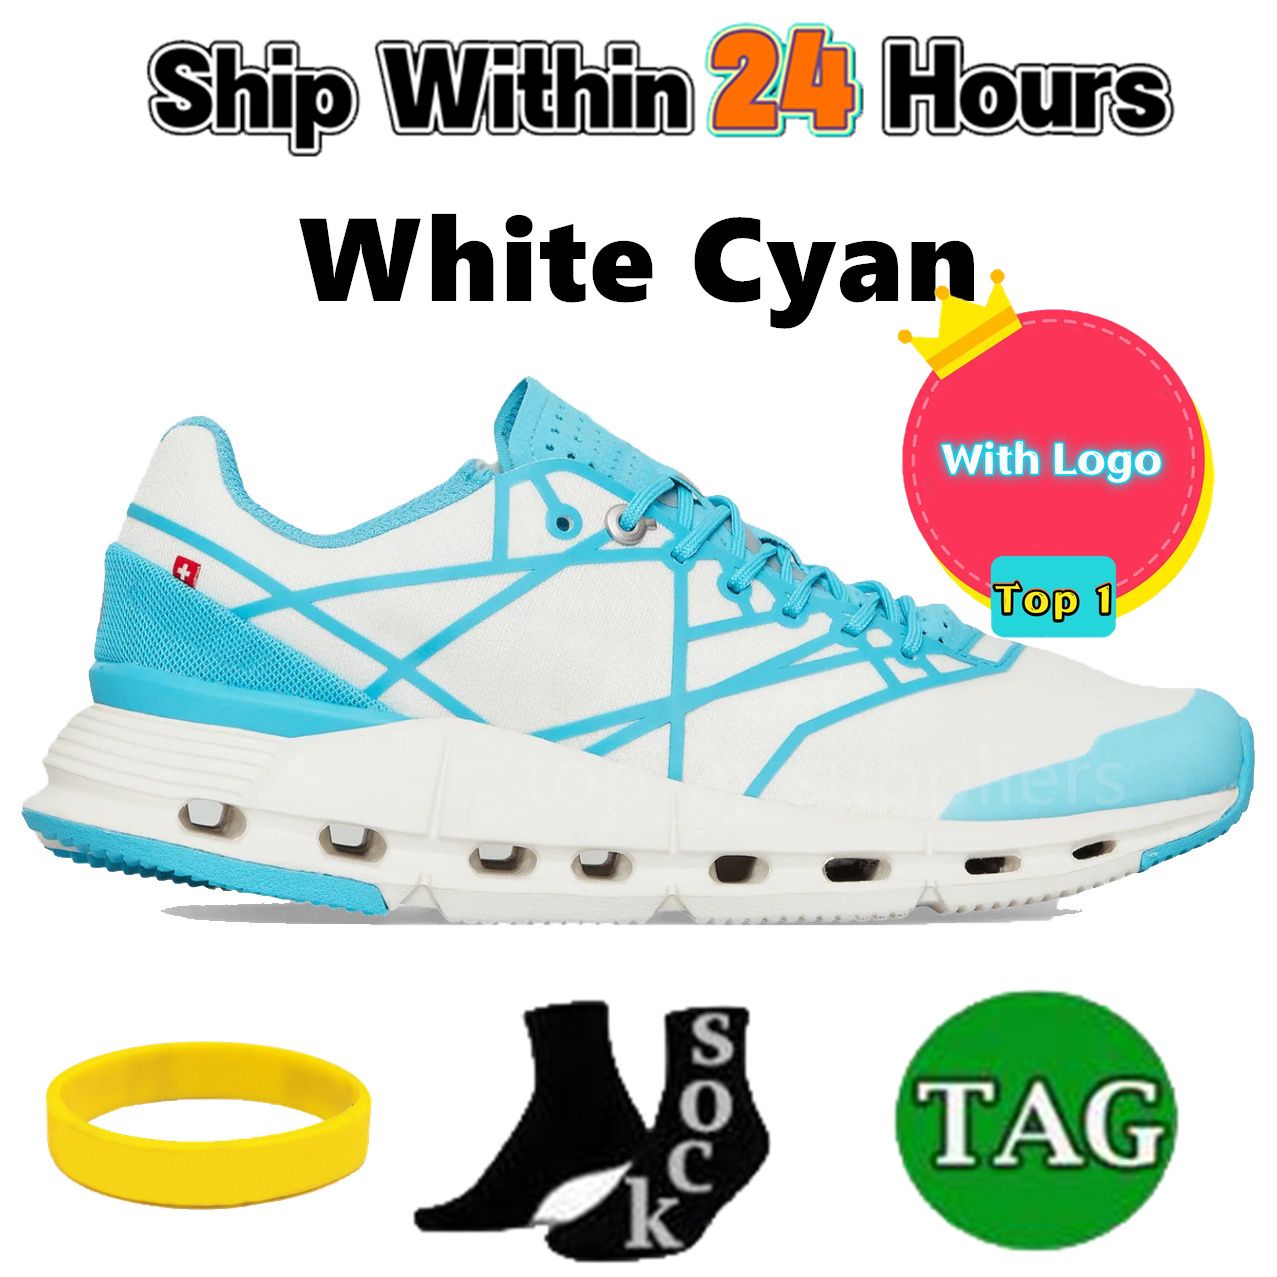 29 White Cyan